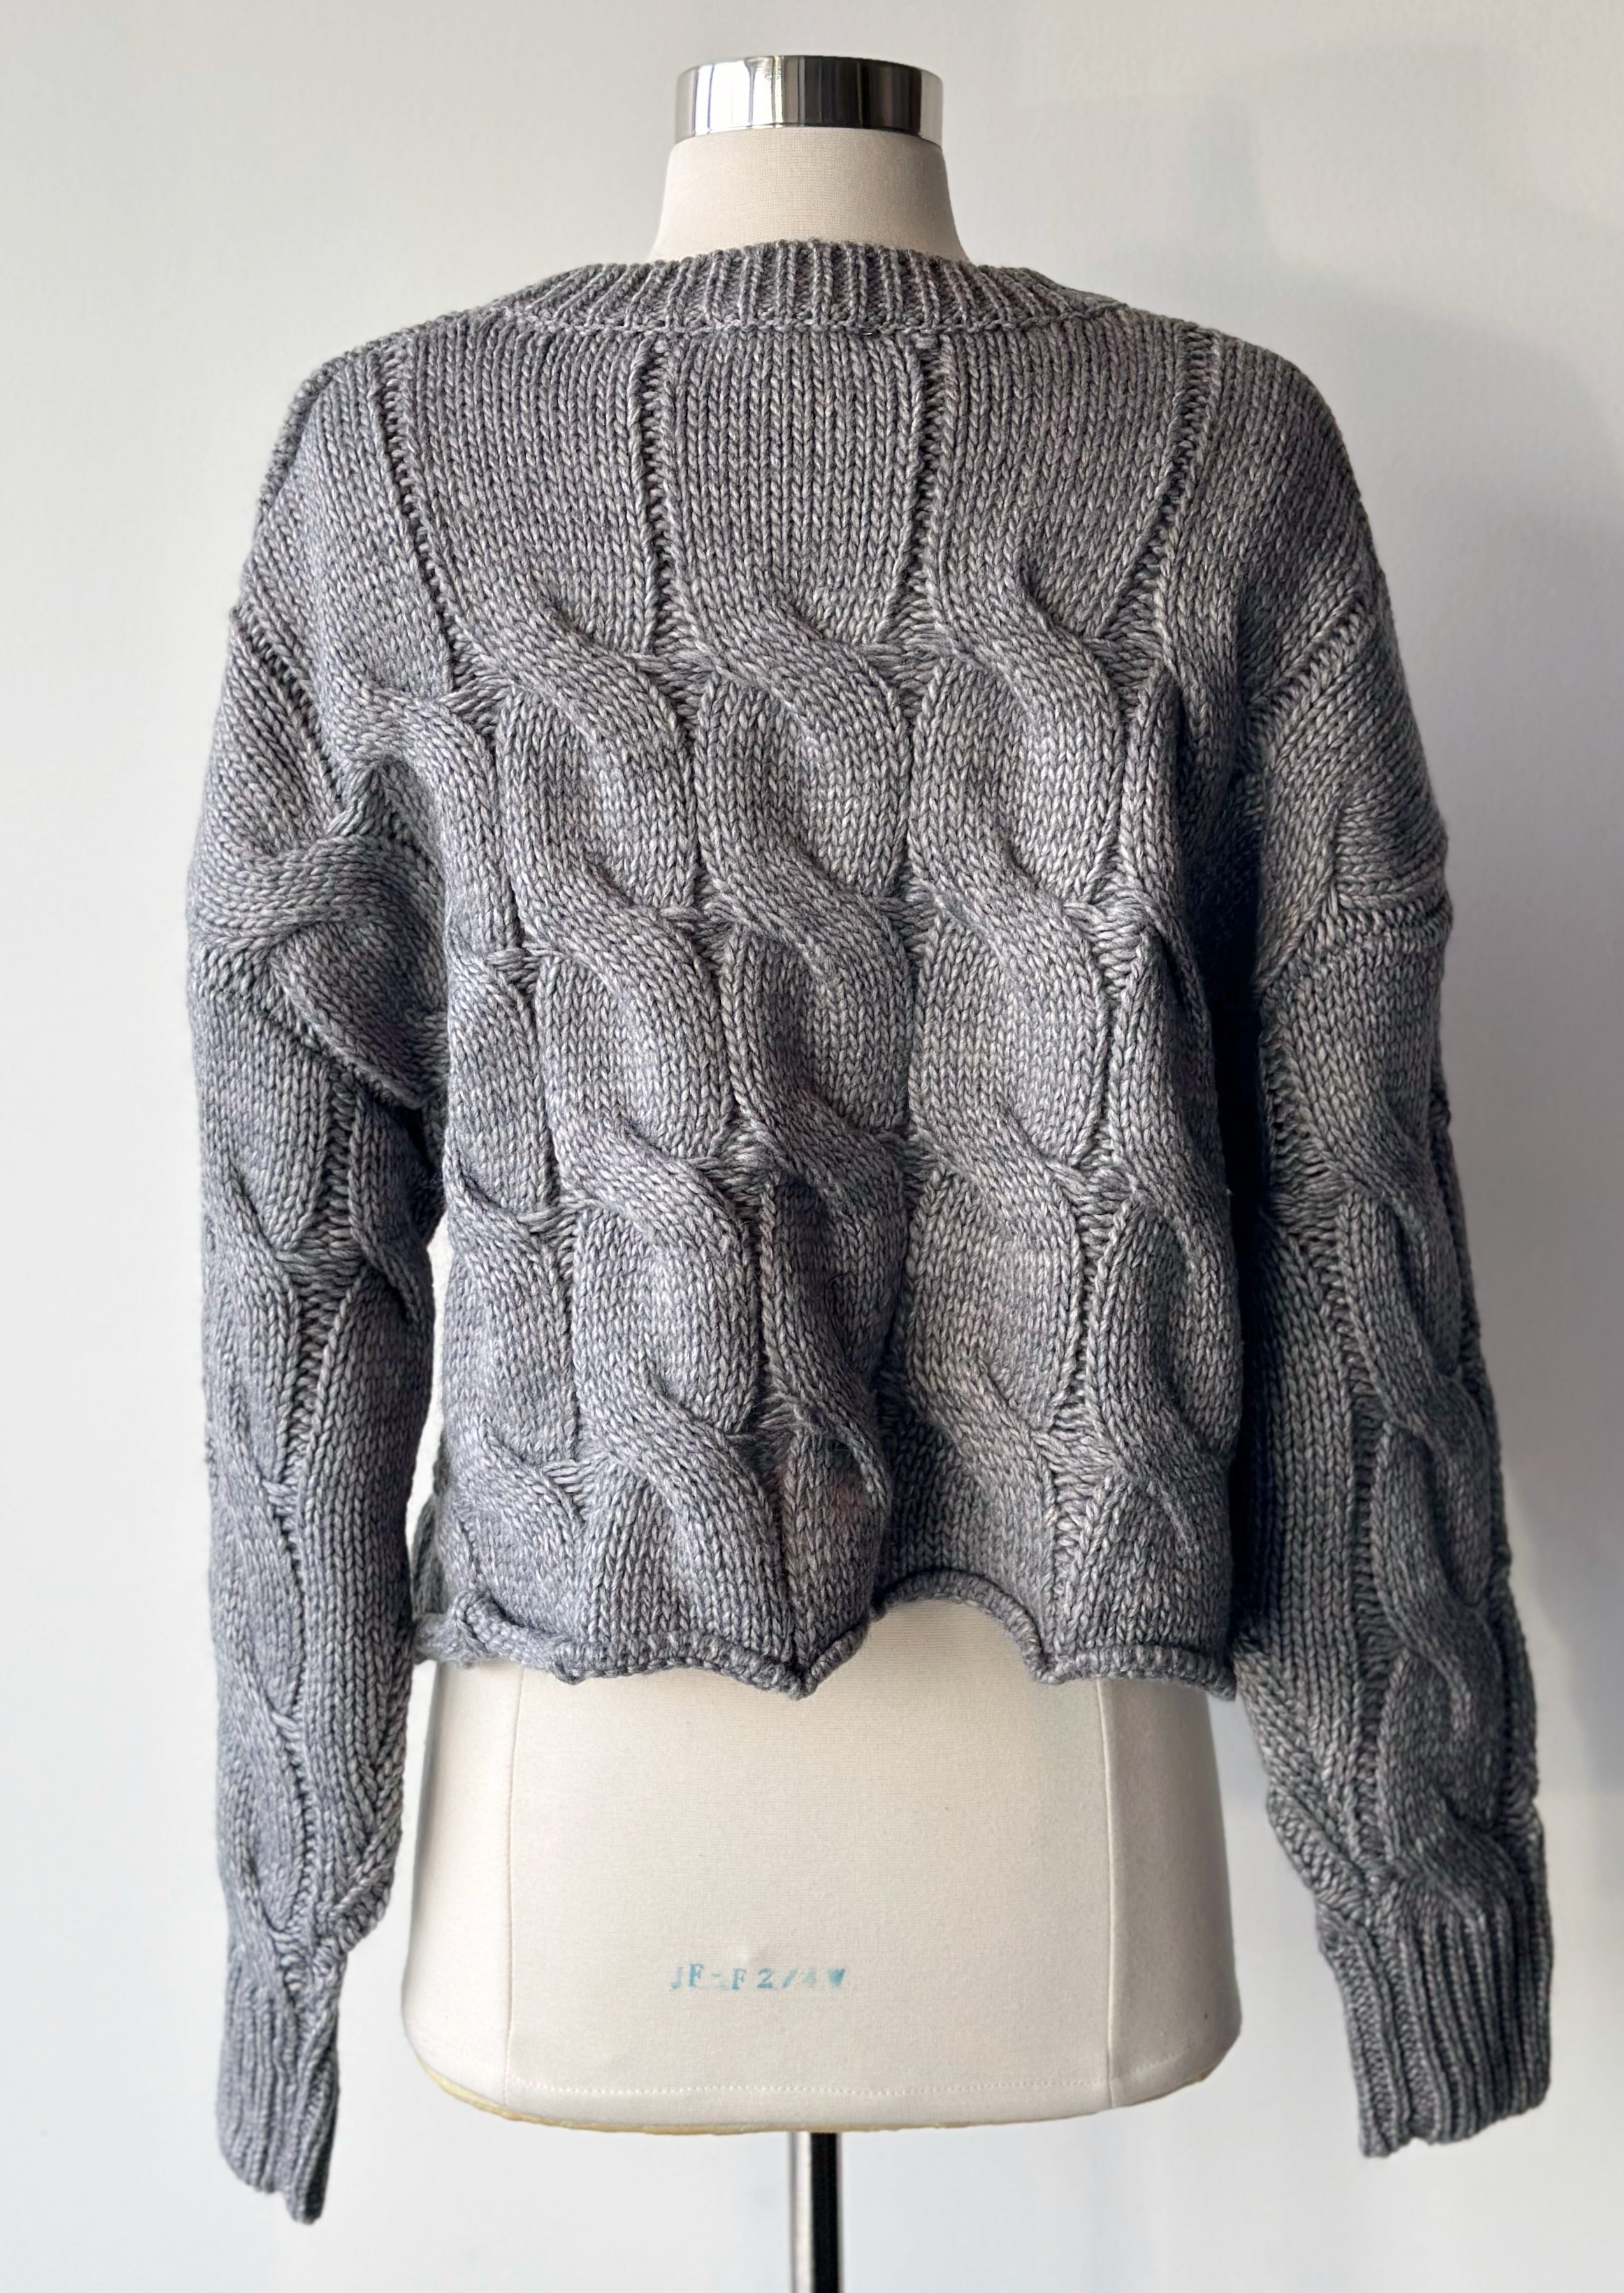 Kora Sweater - Proper